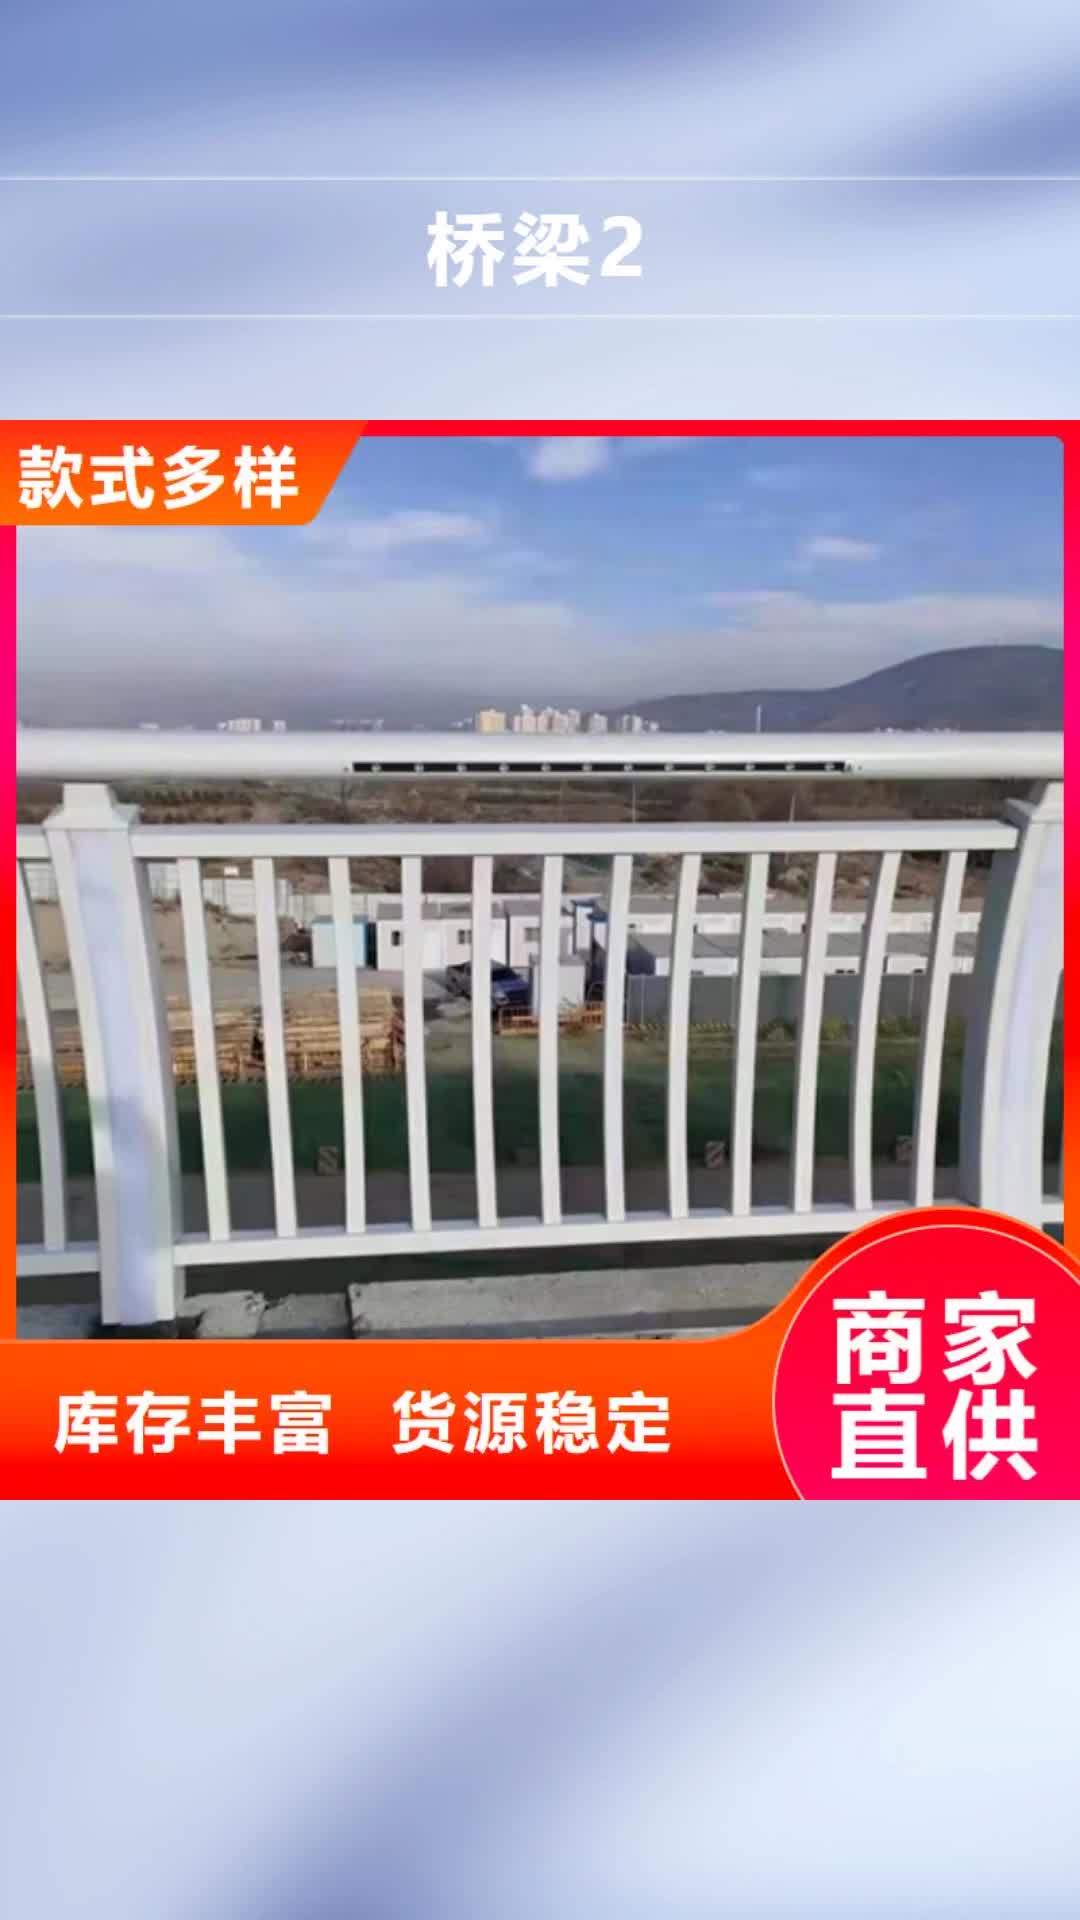 台州【桥梁2】 公路桥梁护栏质优价保